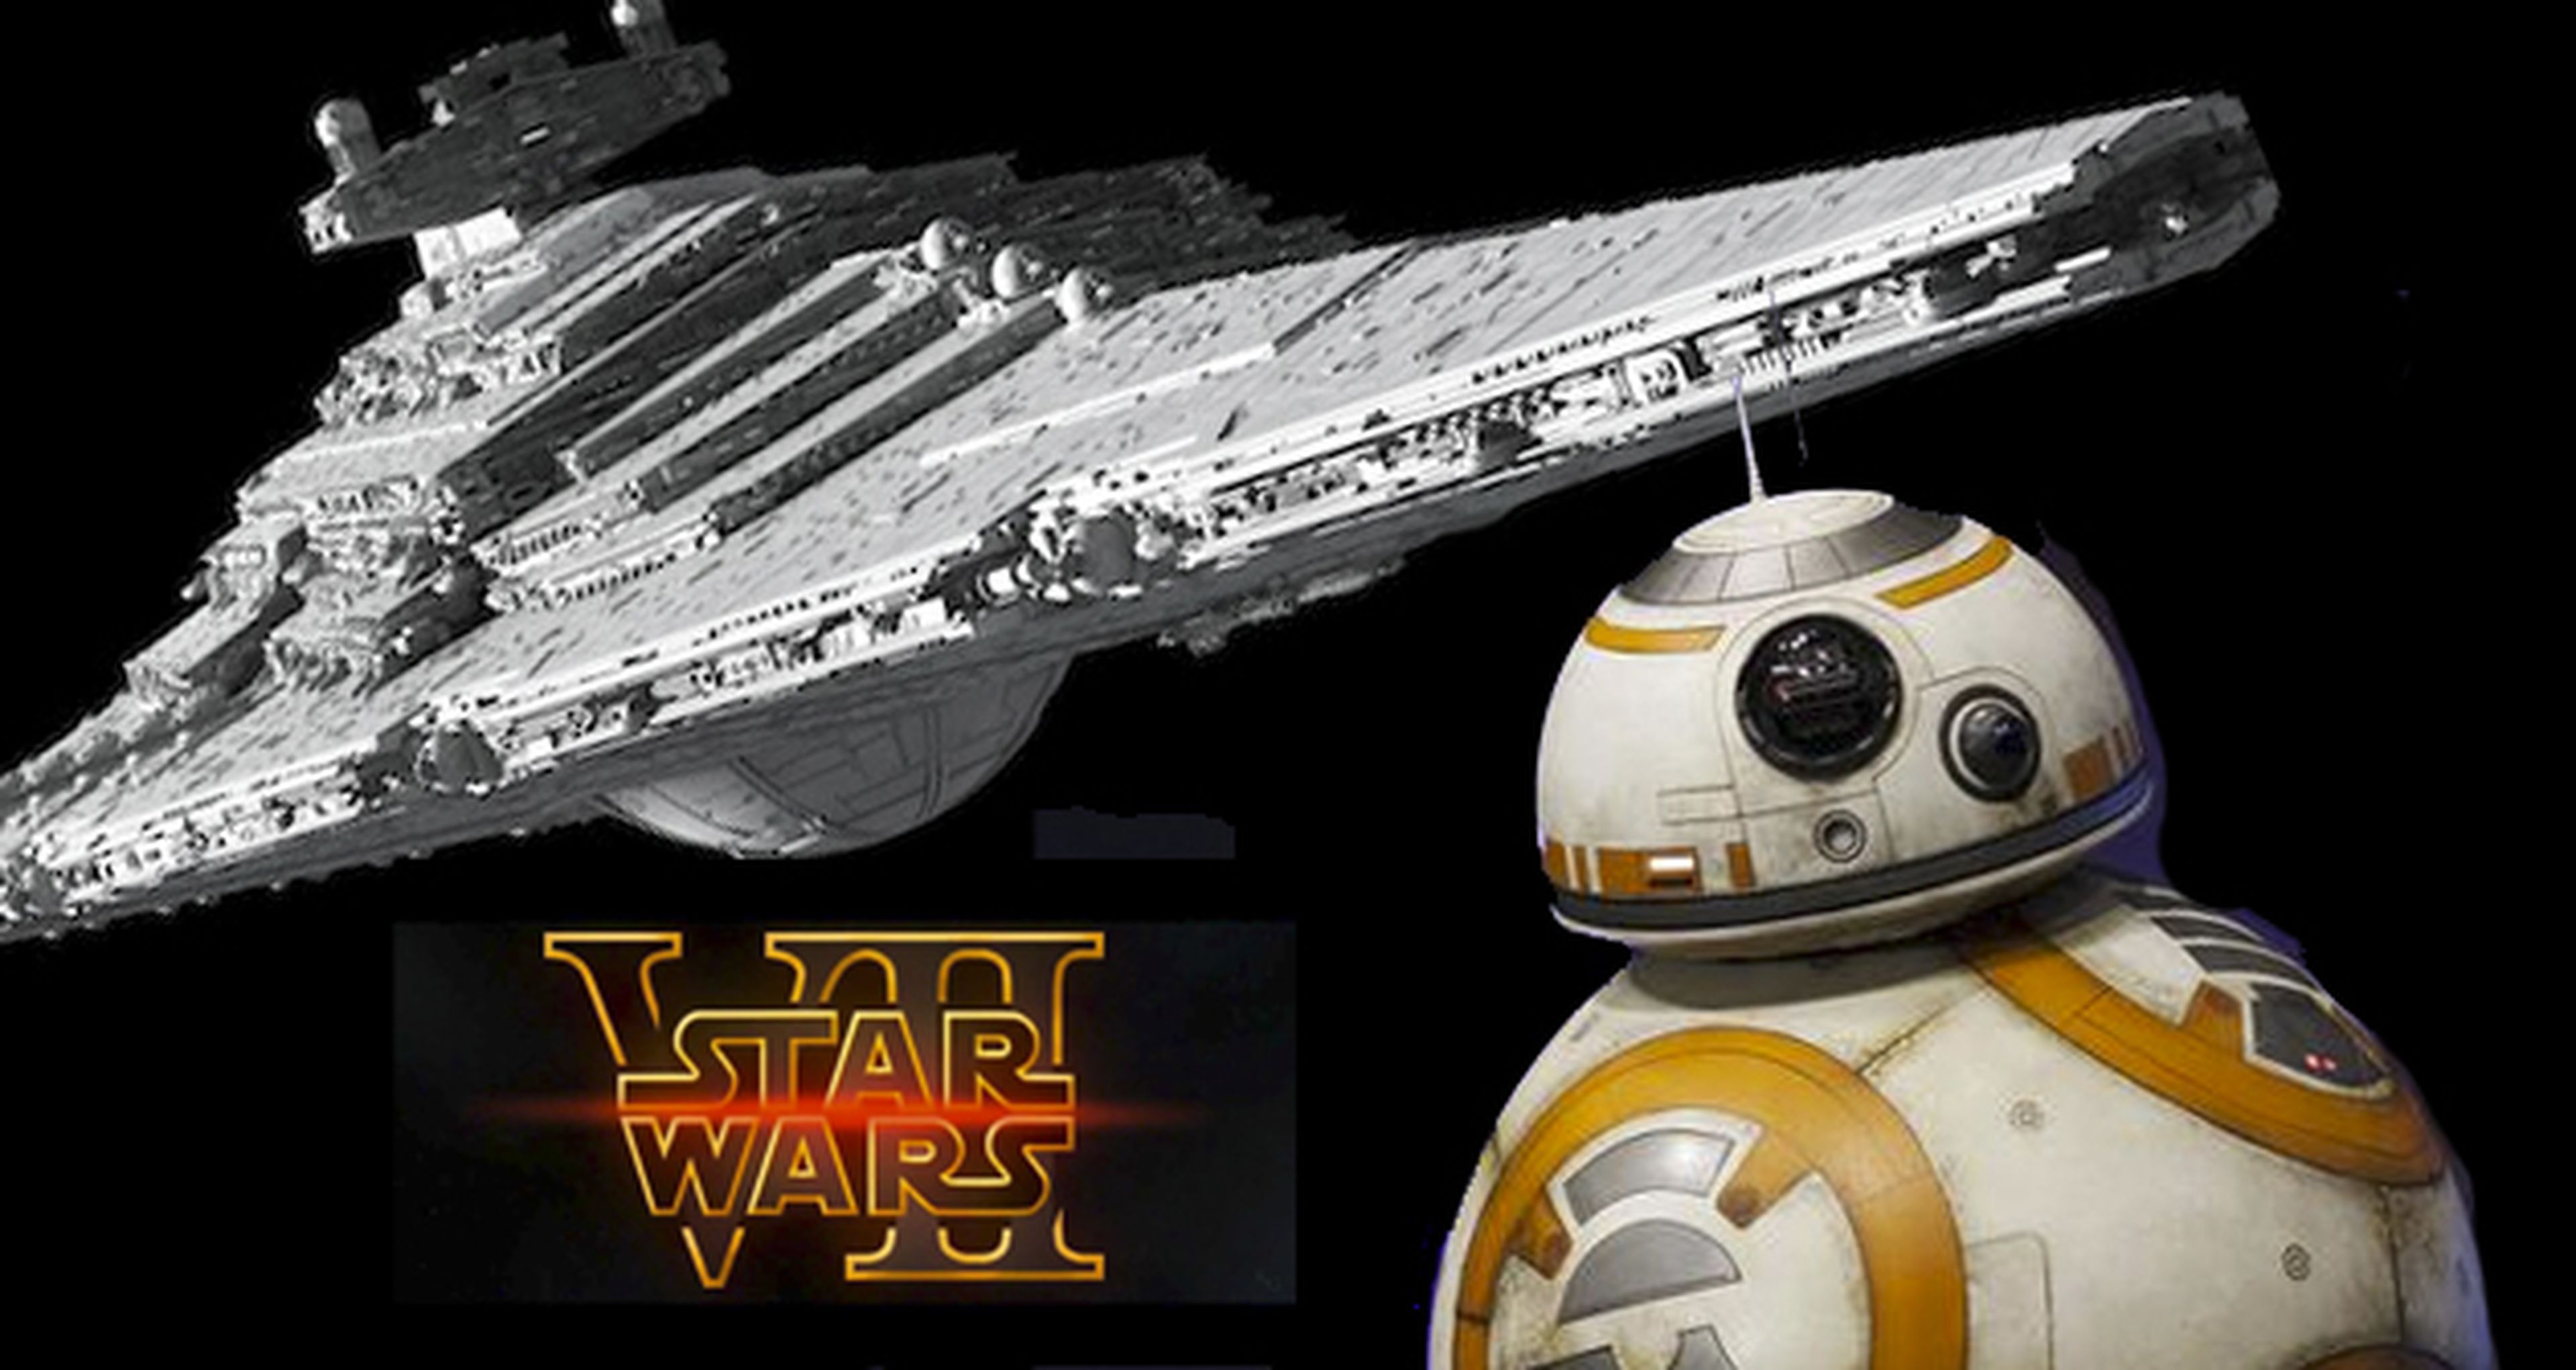 Star Wars VII presenta el nombre del Destructor Estelar y novedades sobre BB-8